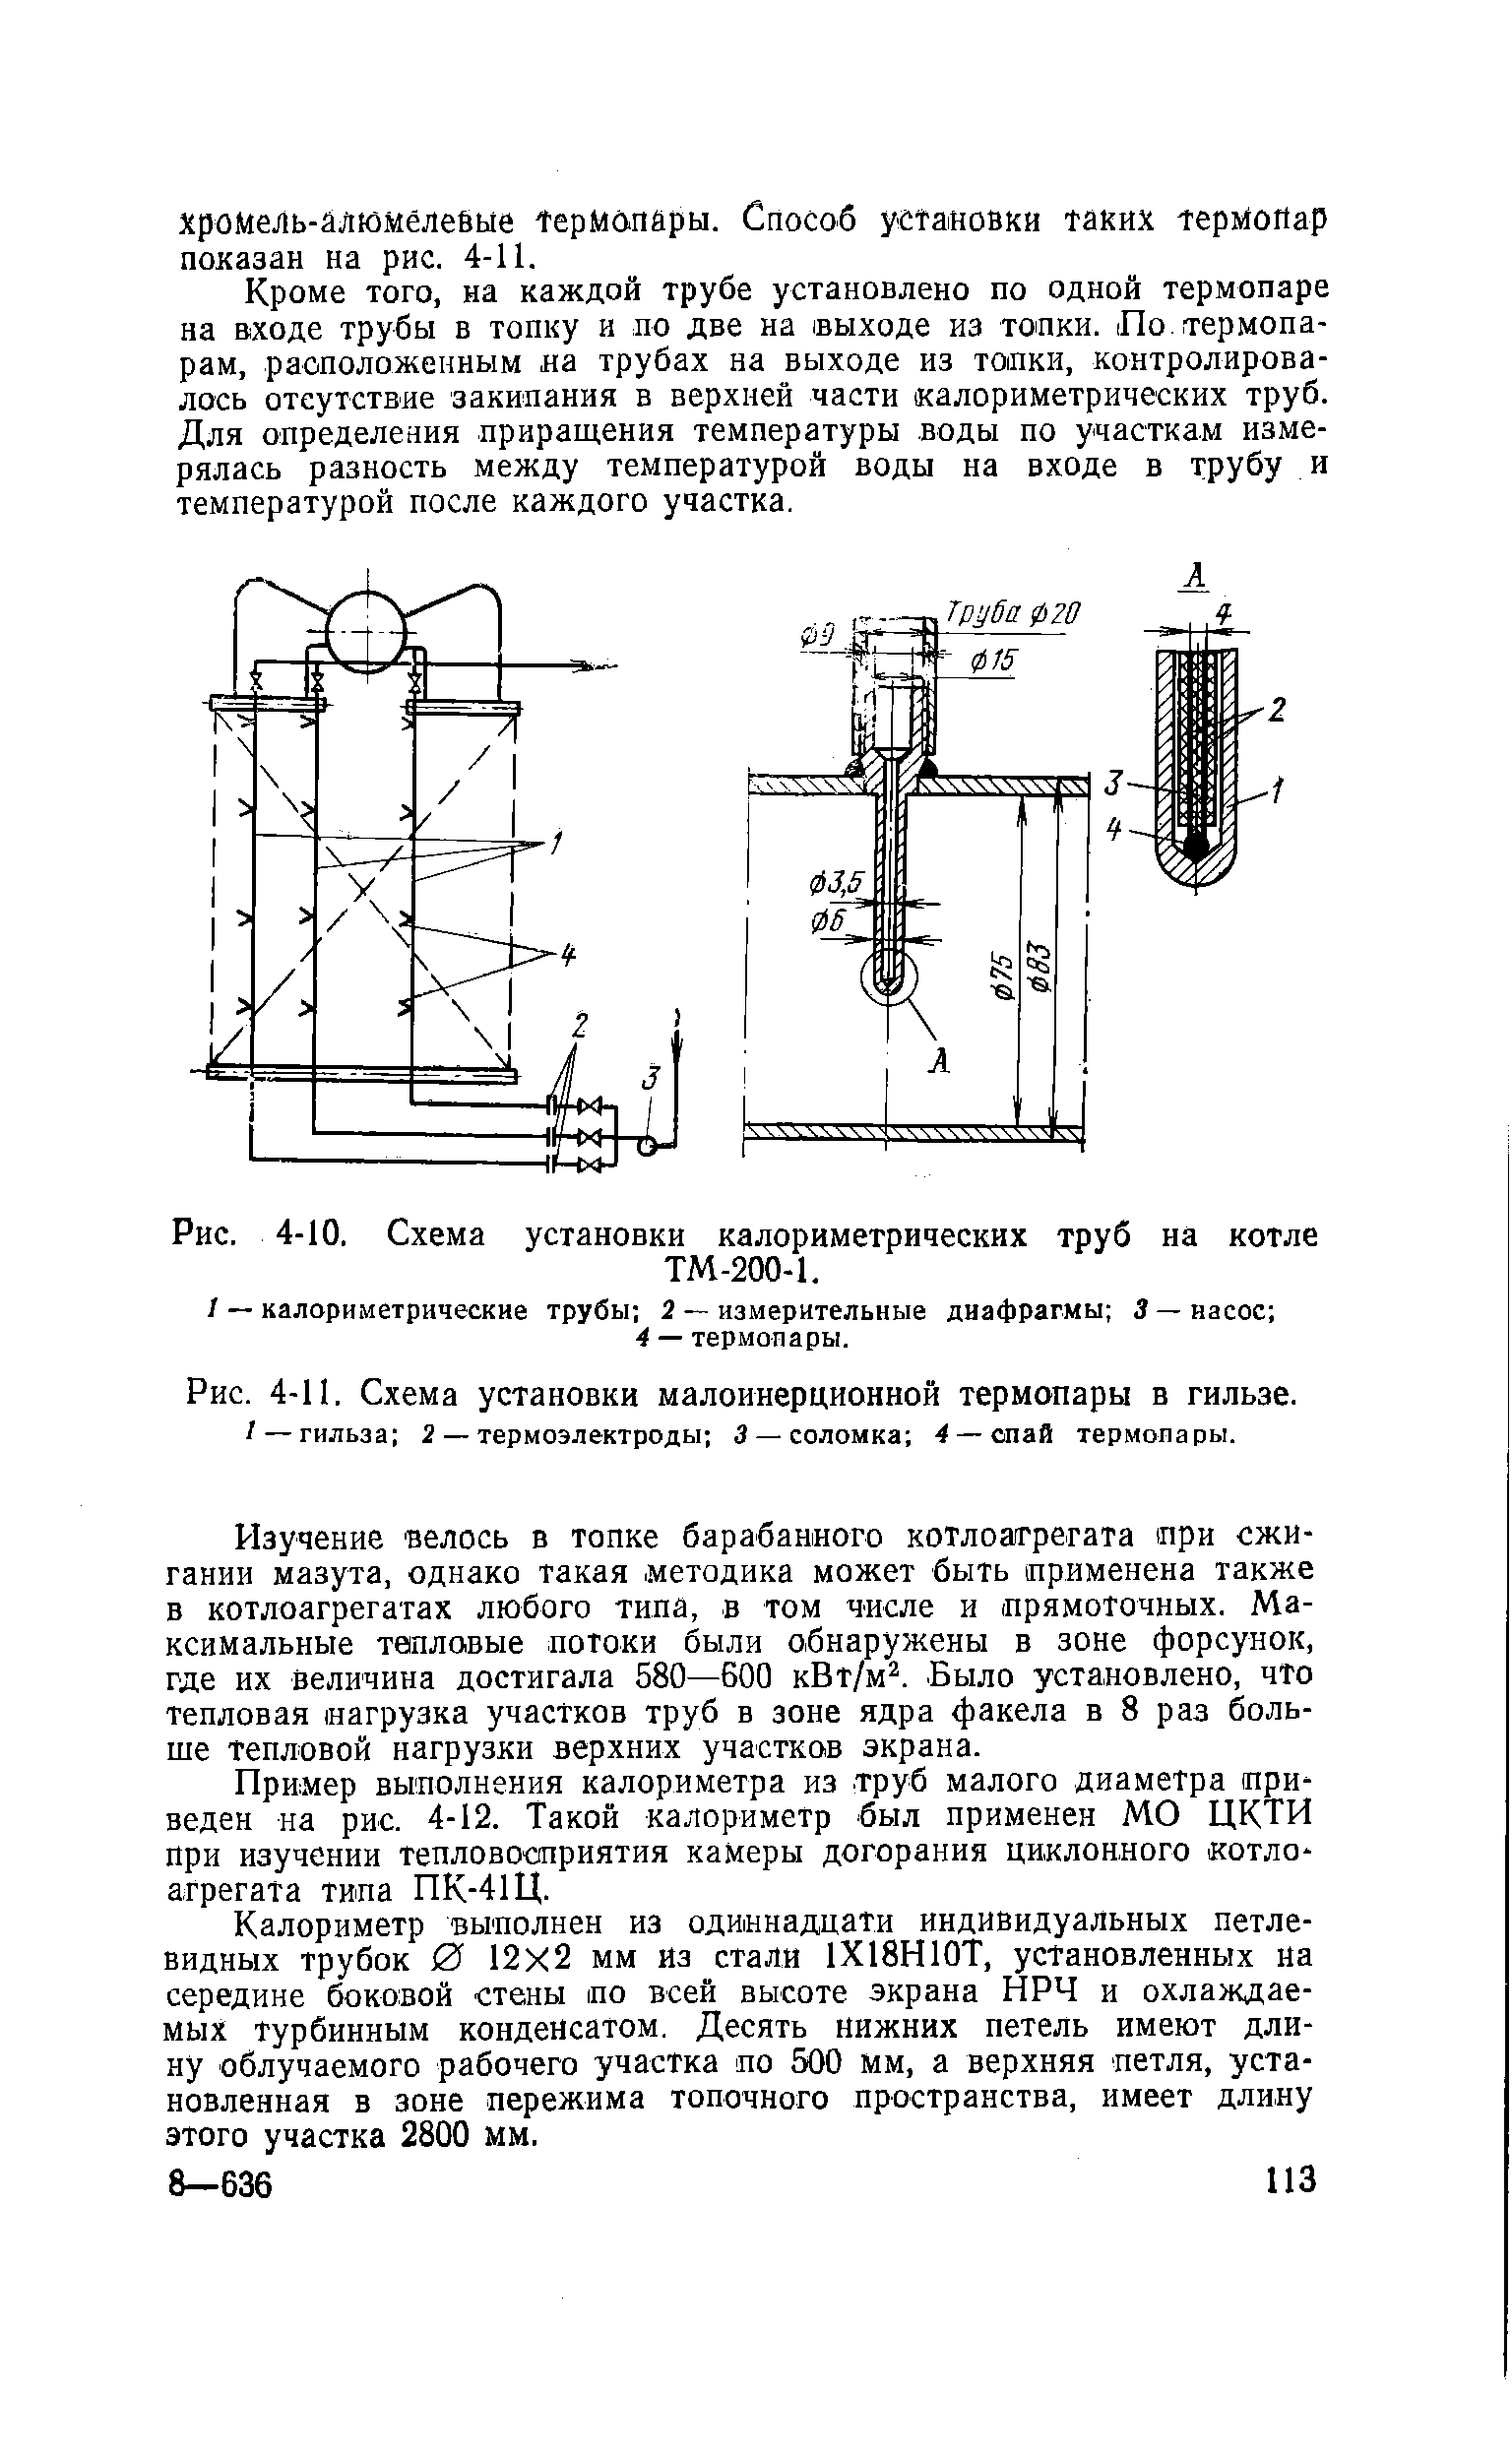 Рис. 4-11. Схема установки малоинерционной термопары в гильзе.
